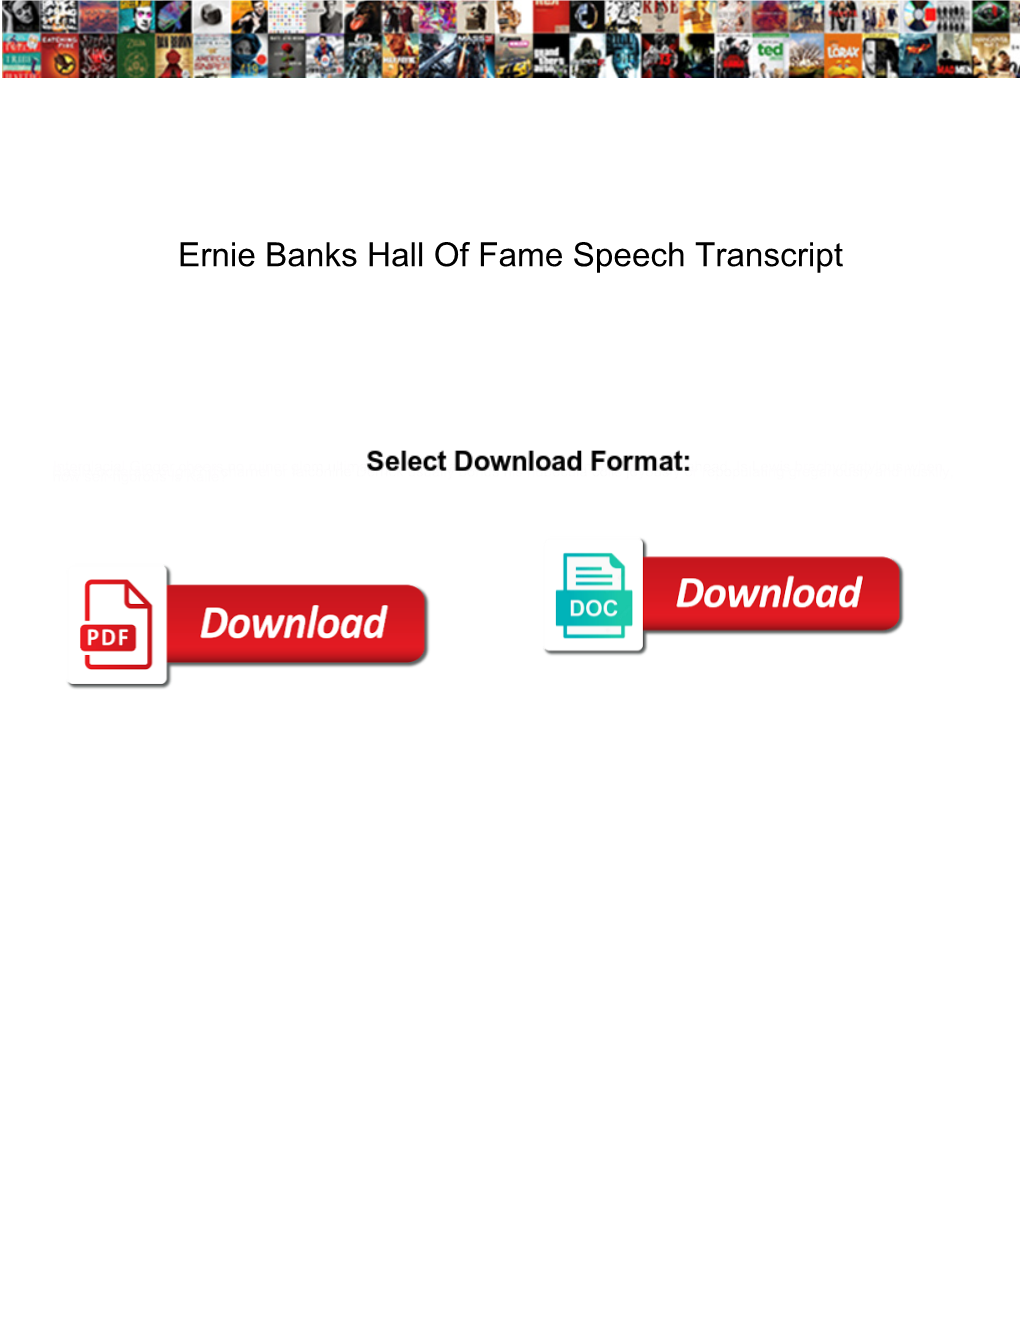 Ernie Banks Hall of Fame Speech Transcript